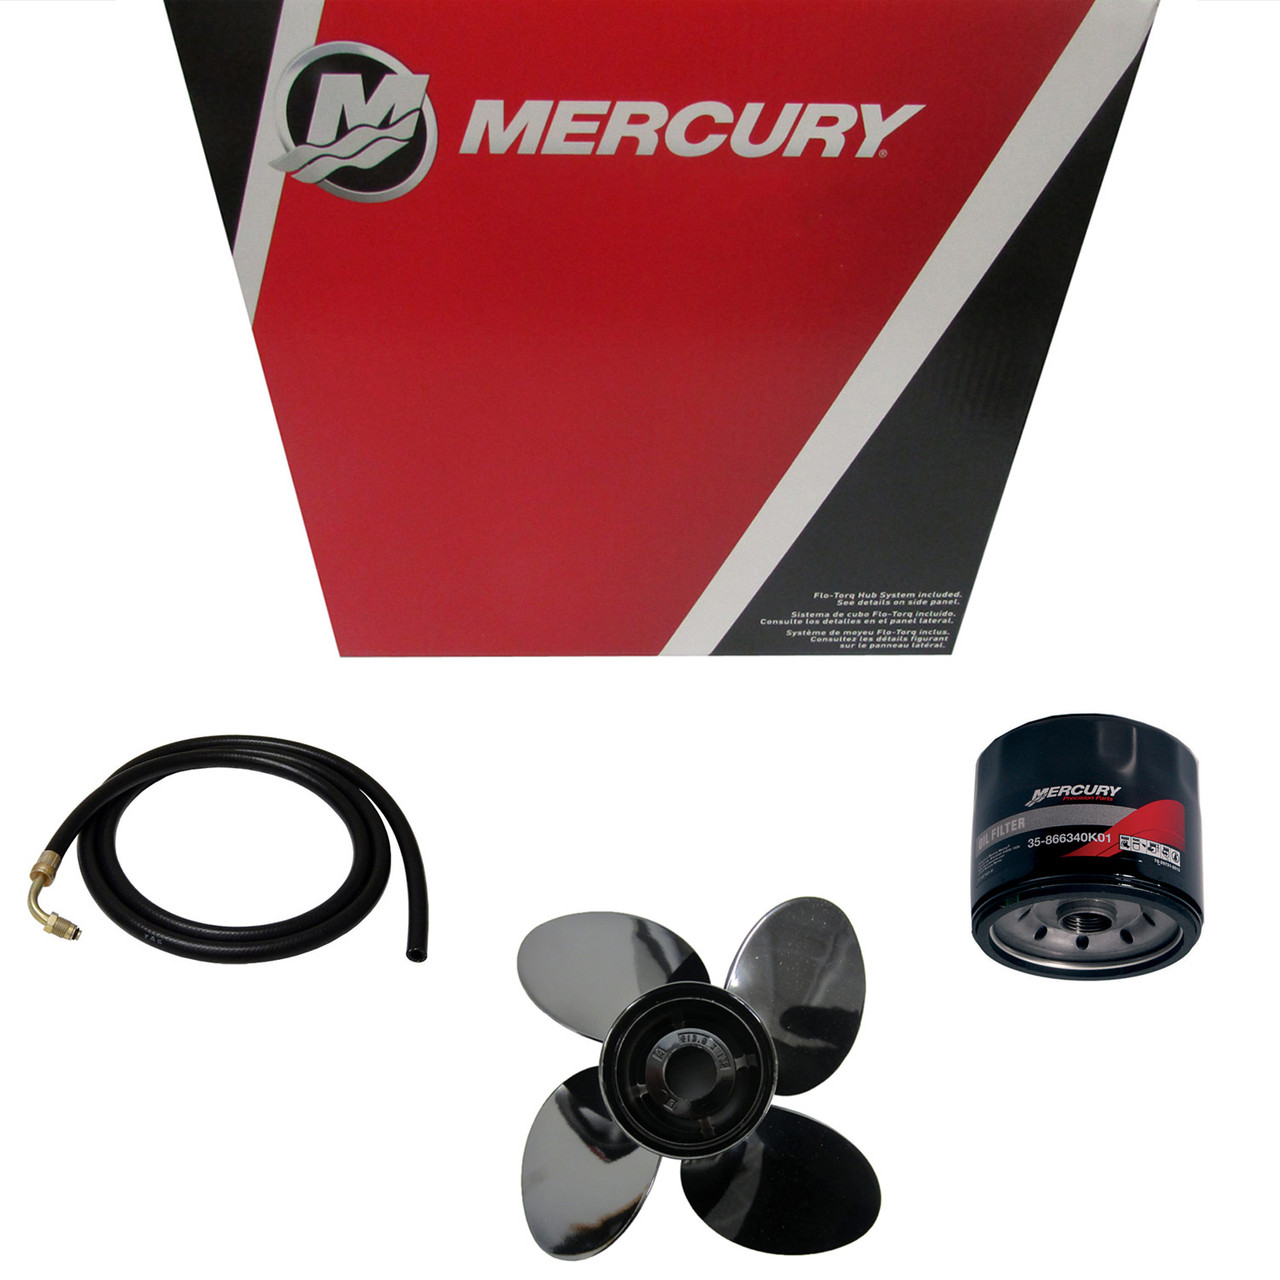 Mercury Marine / Mercruiser New OEM Fitting Qc 5/16, 8M6002064